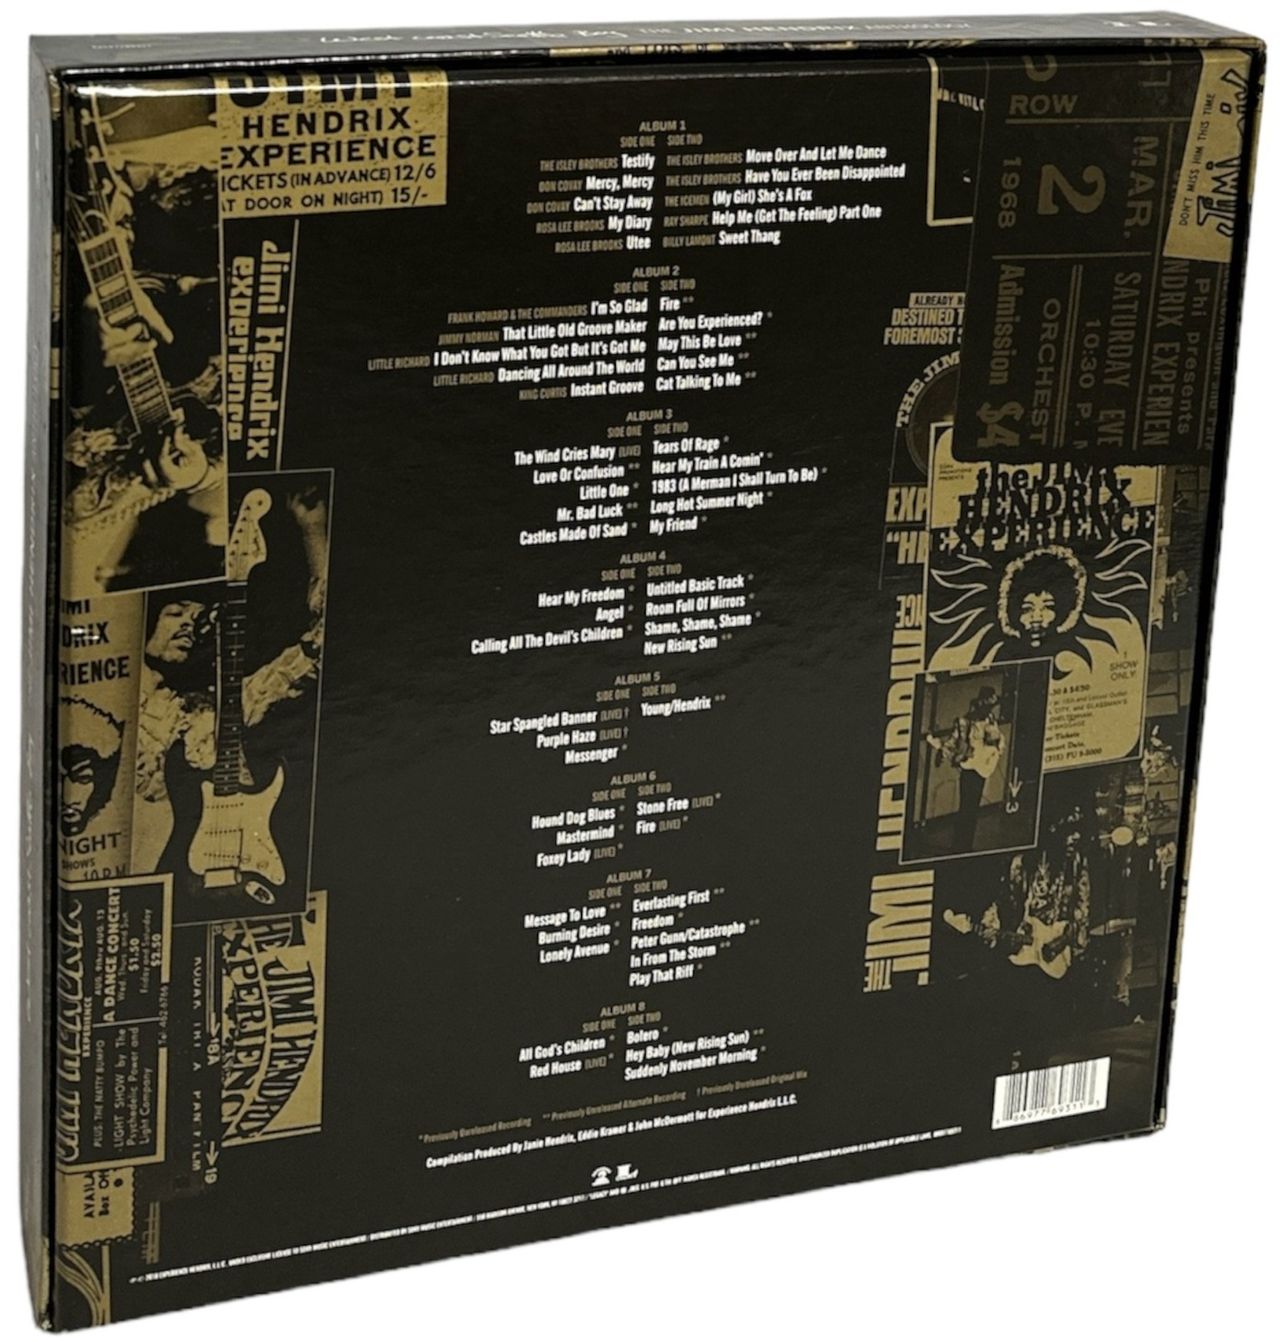 Jimi Hendrix West Coast Seattle Boy: The Jimi Hendrix Anthology US Box set